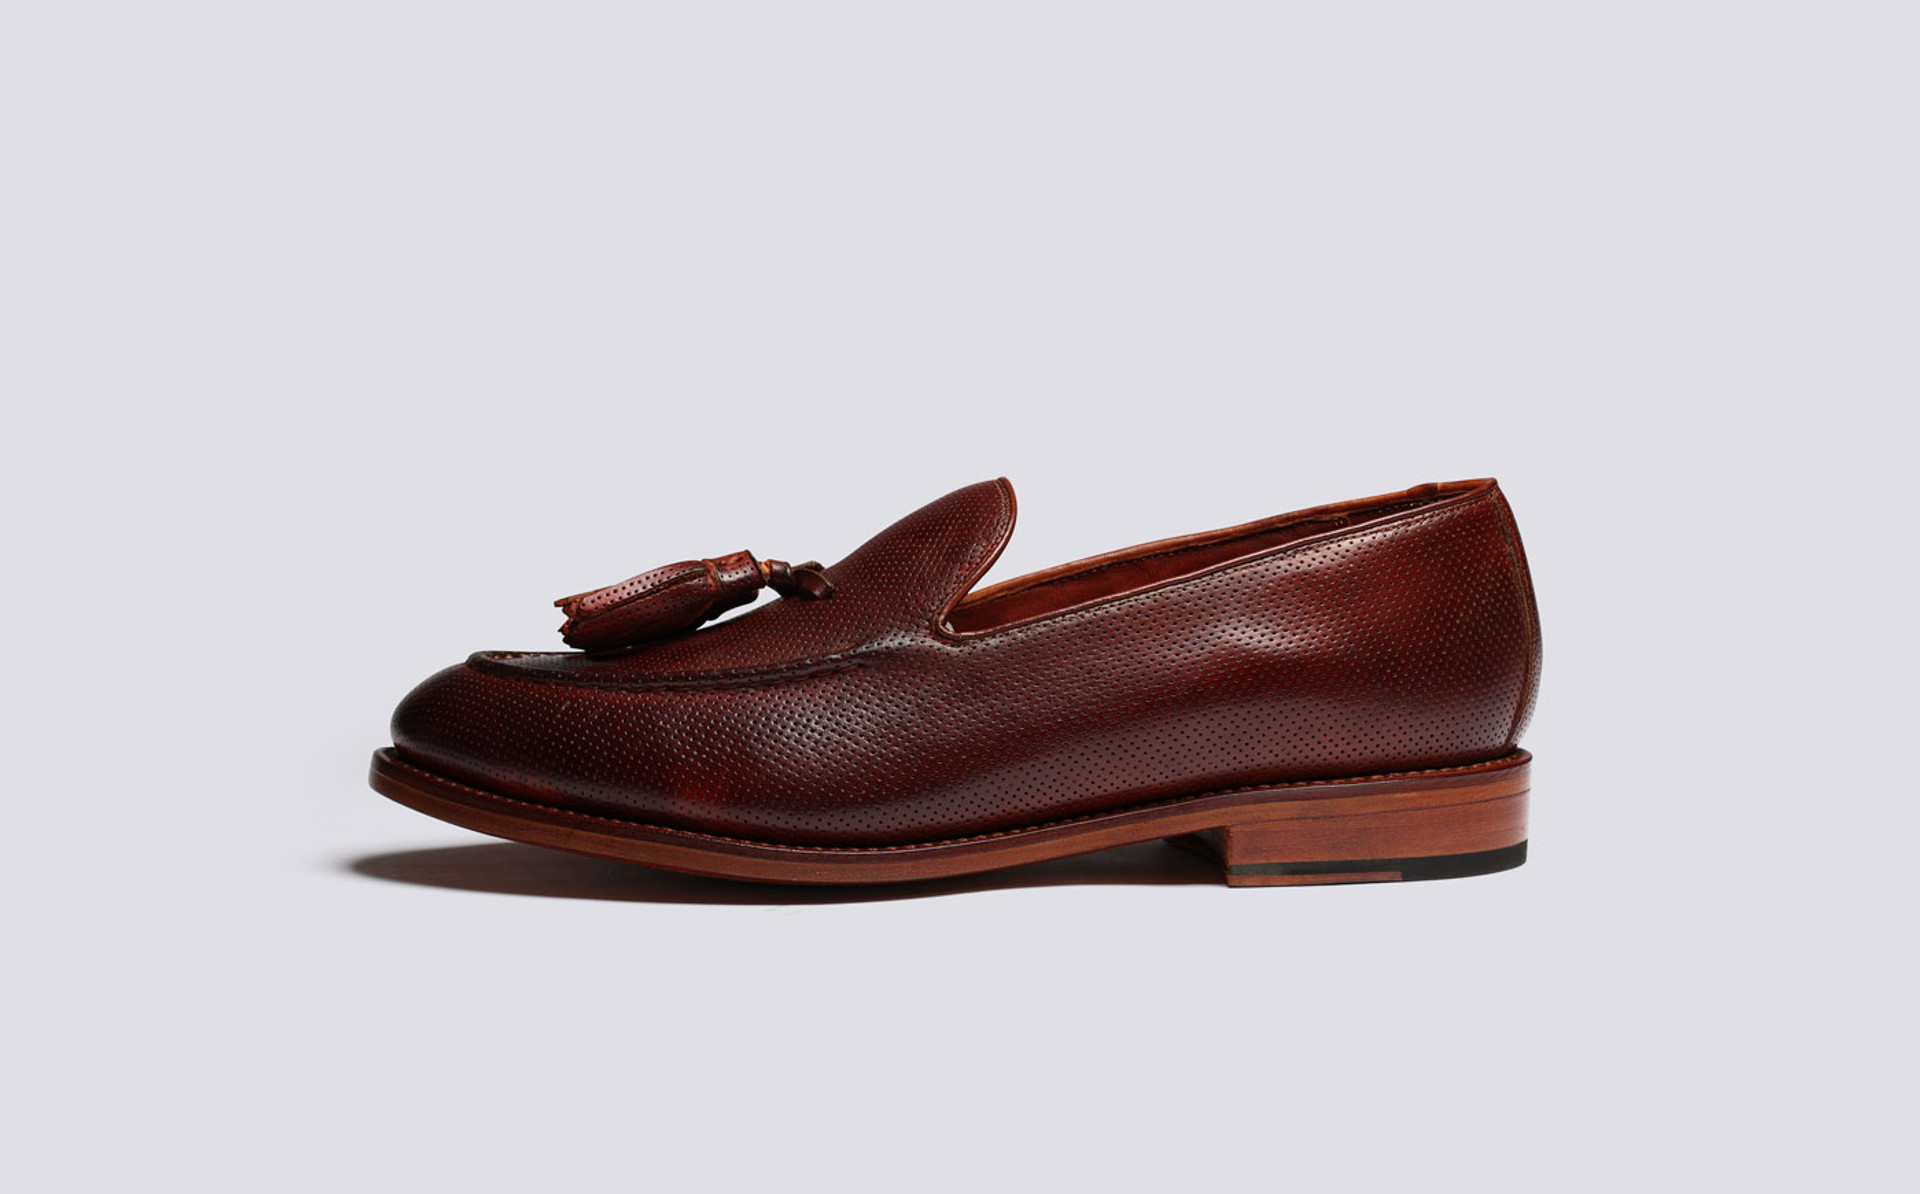 Grenson Merlin | Men's luxury loafers in leather.